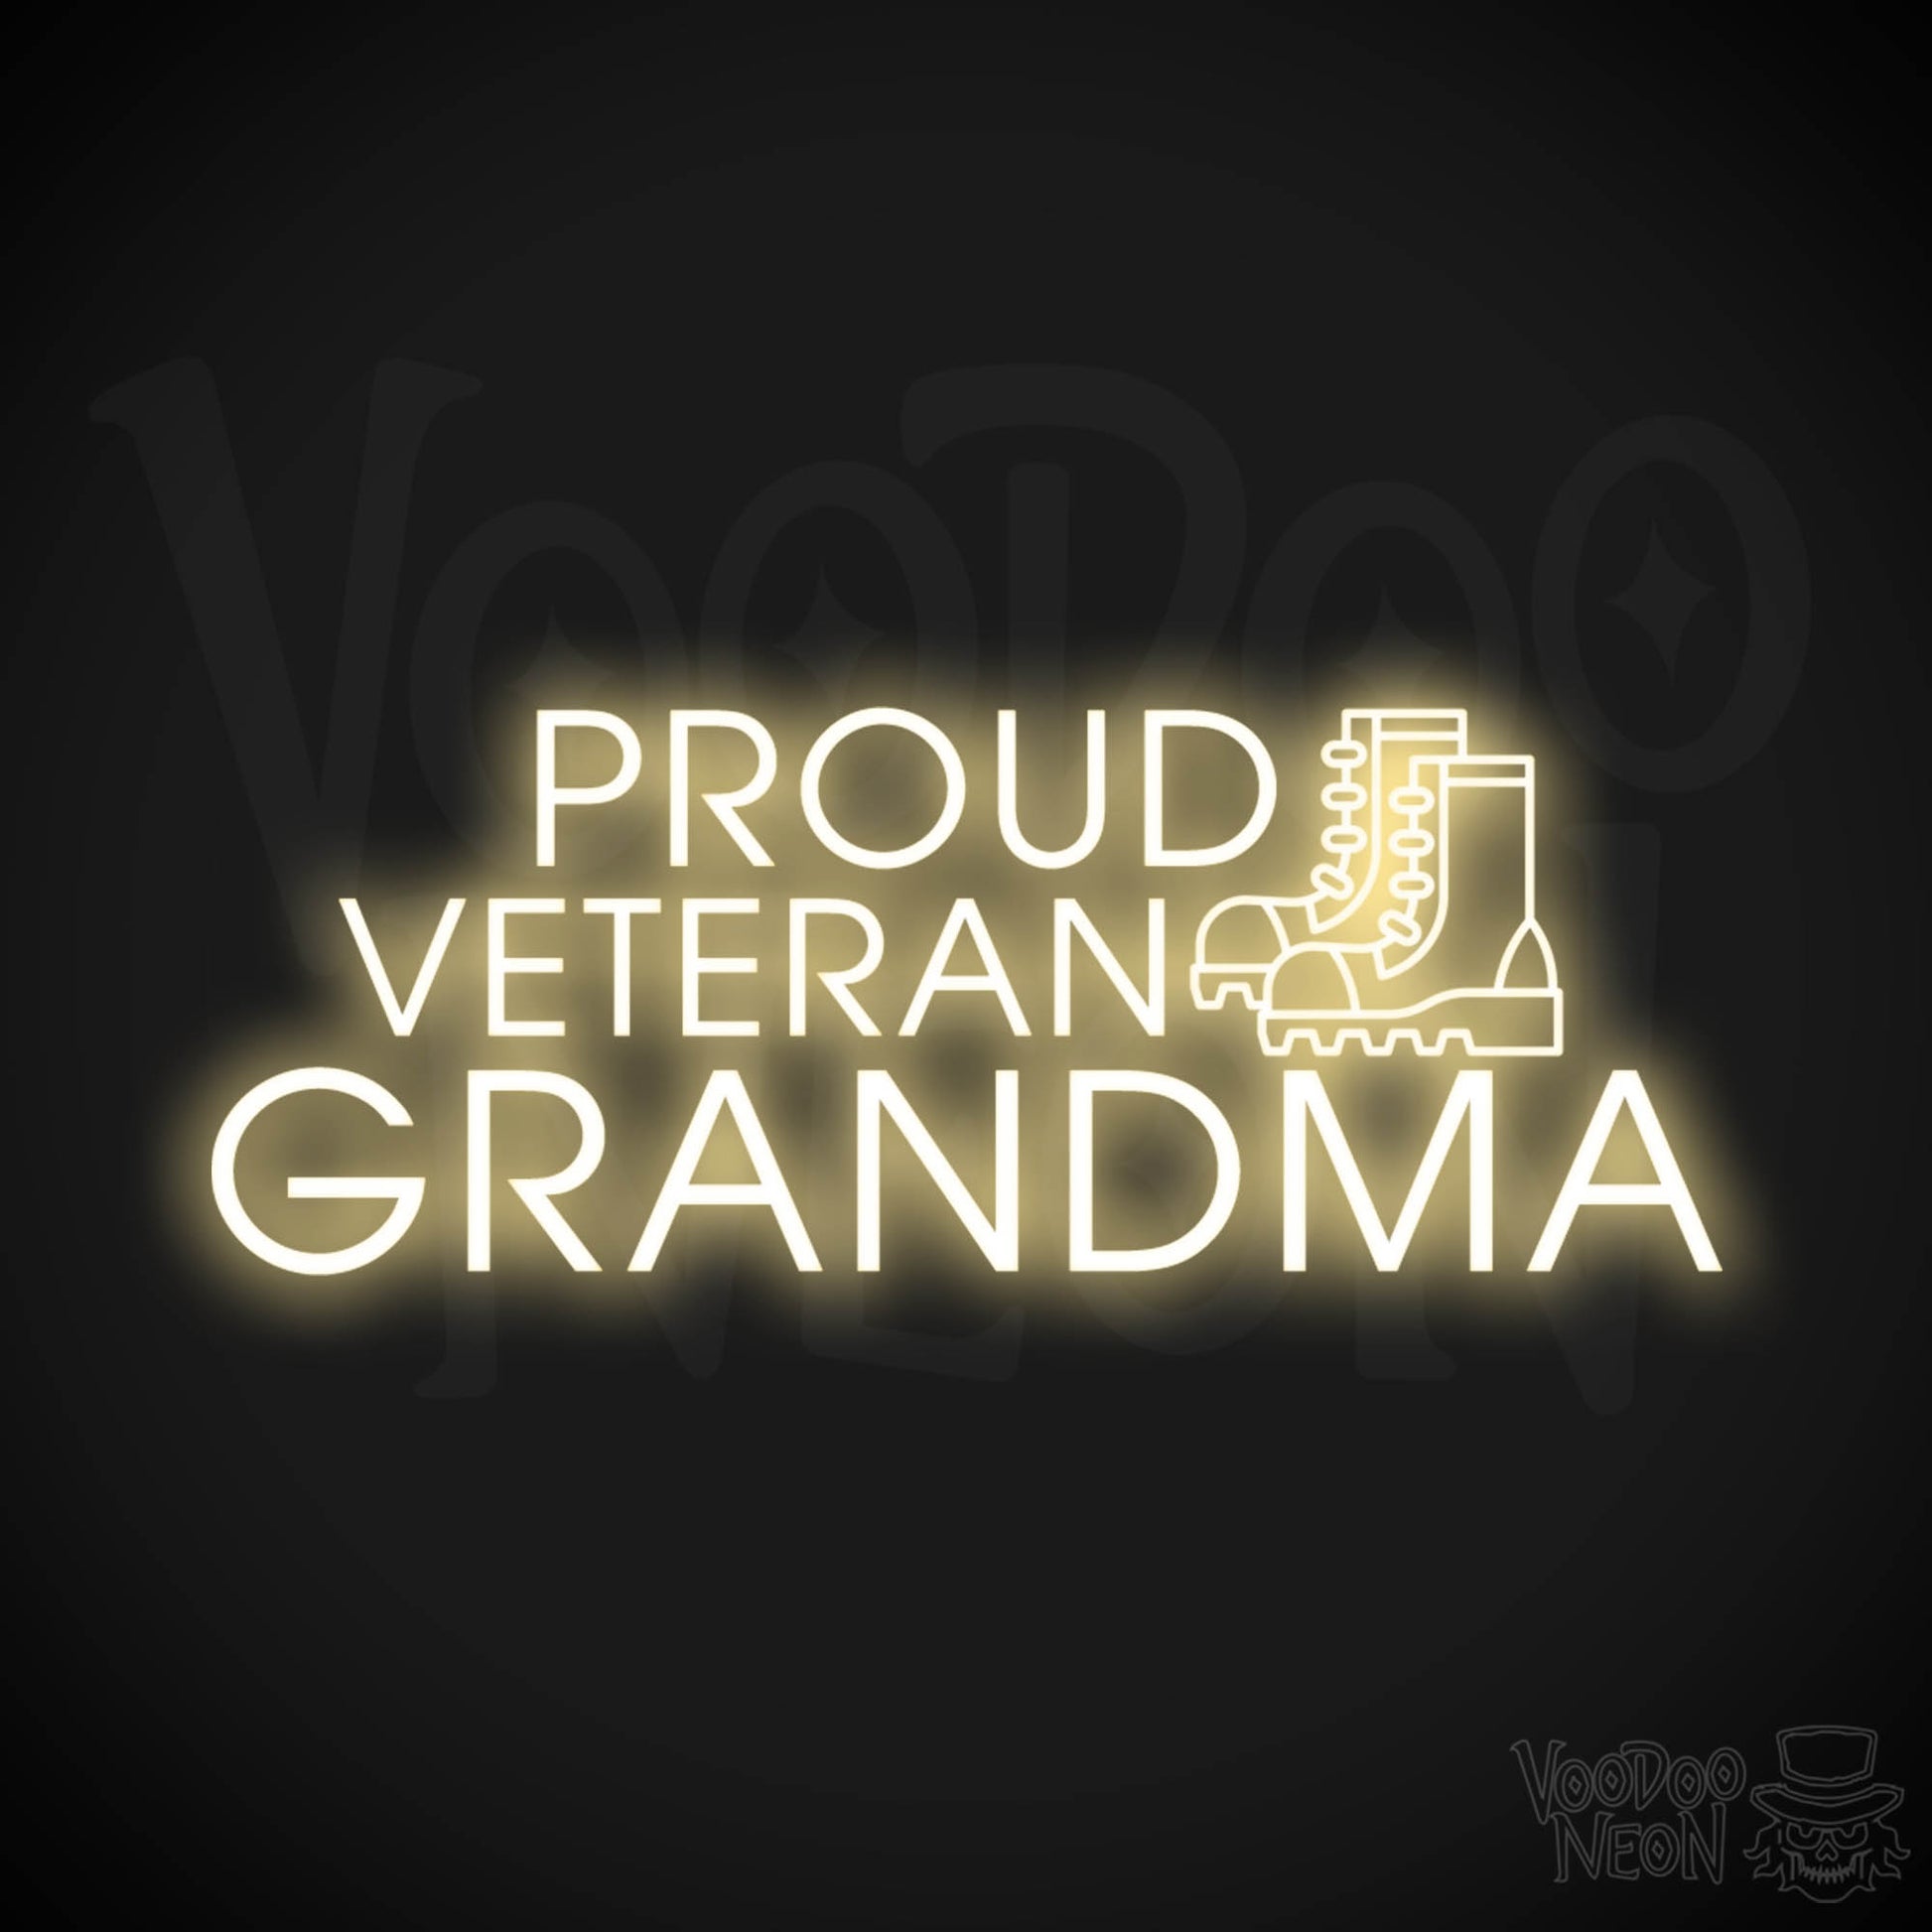 Proud Veteran Grandma Neon Sign - Proud Veteran Grandma Sign - Color Warm White